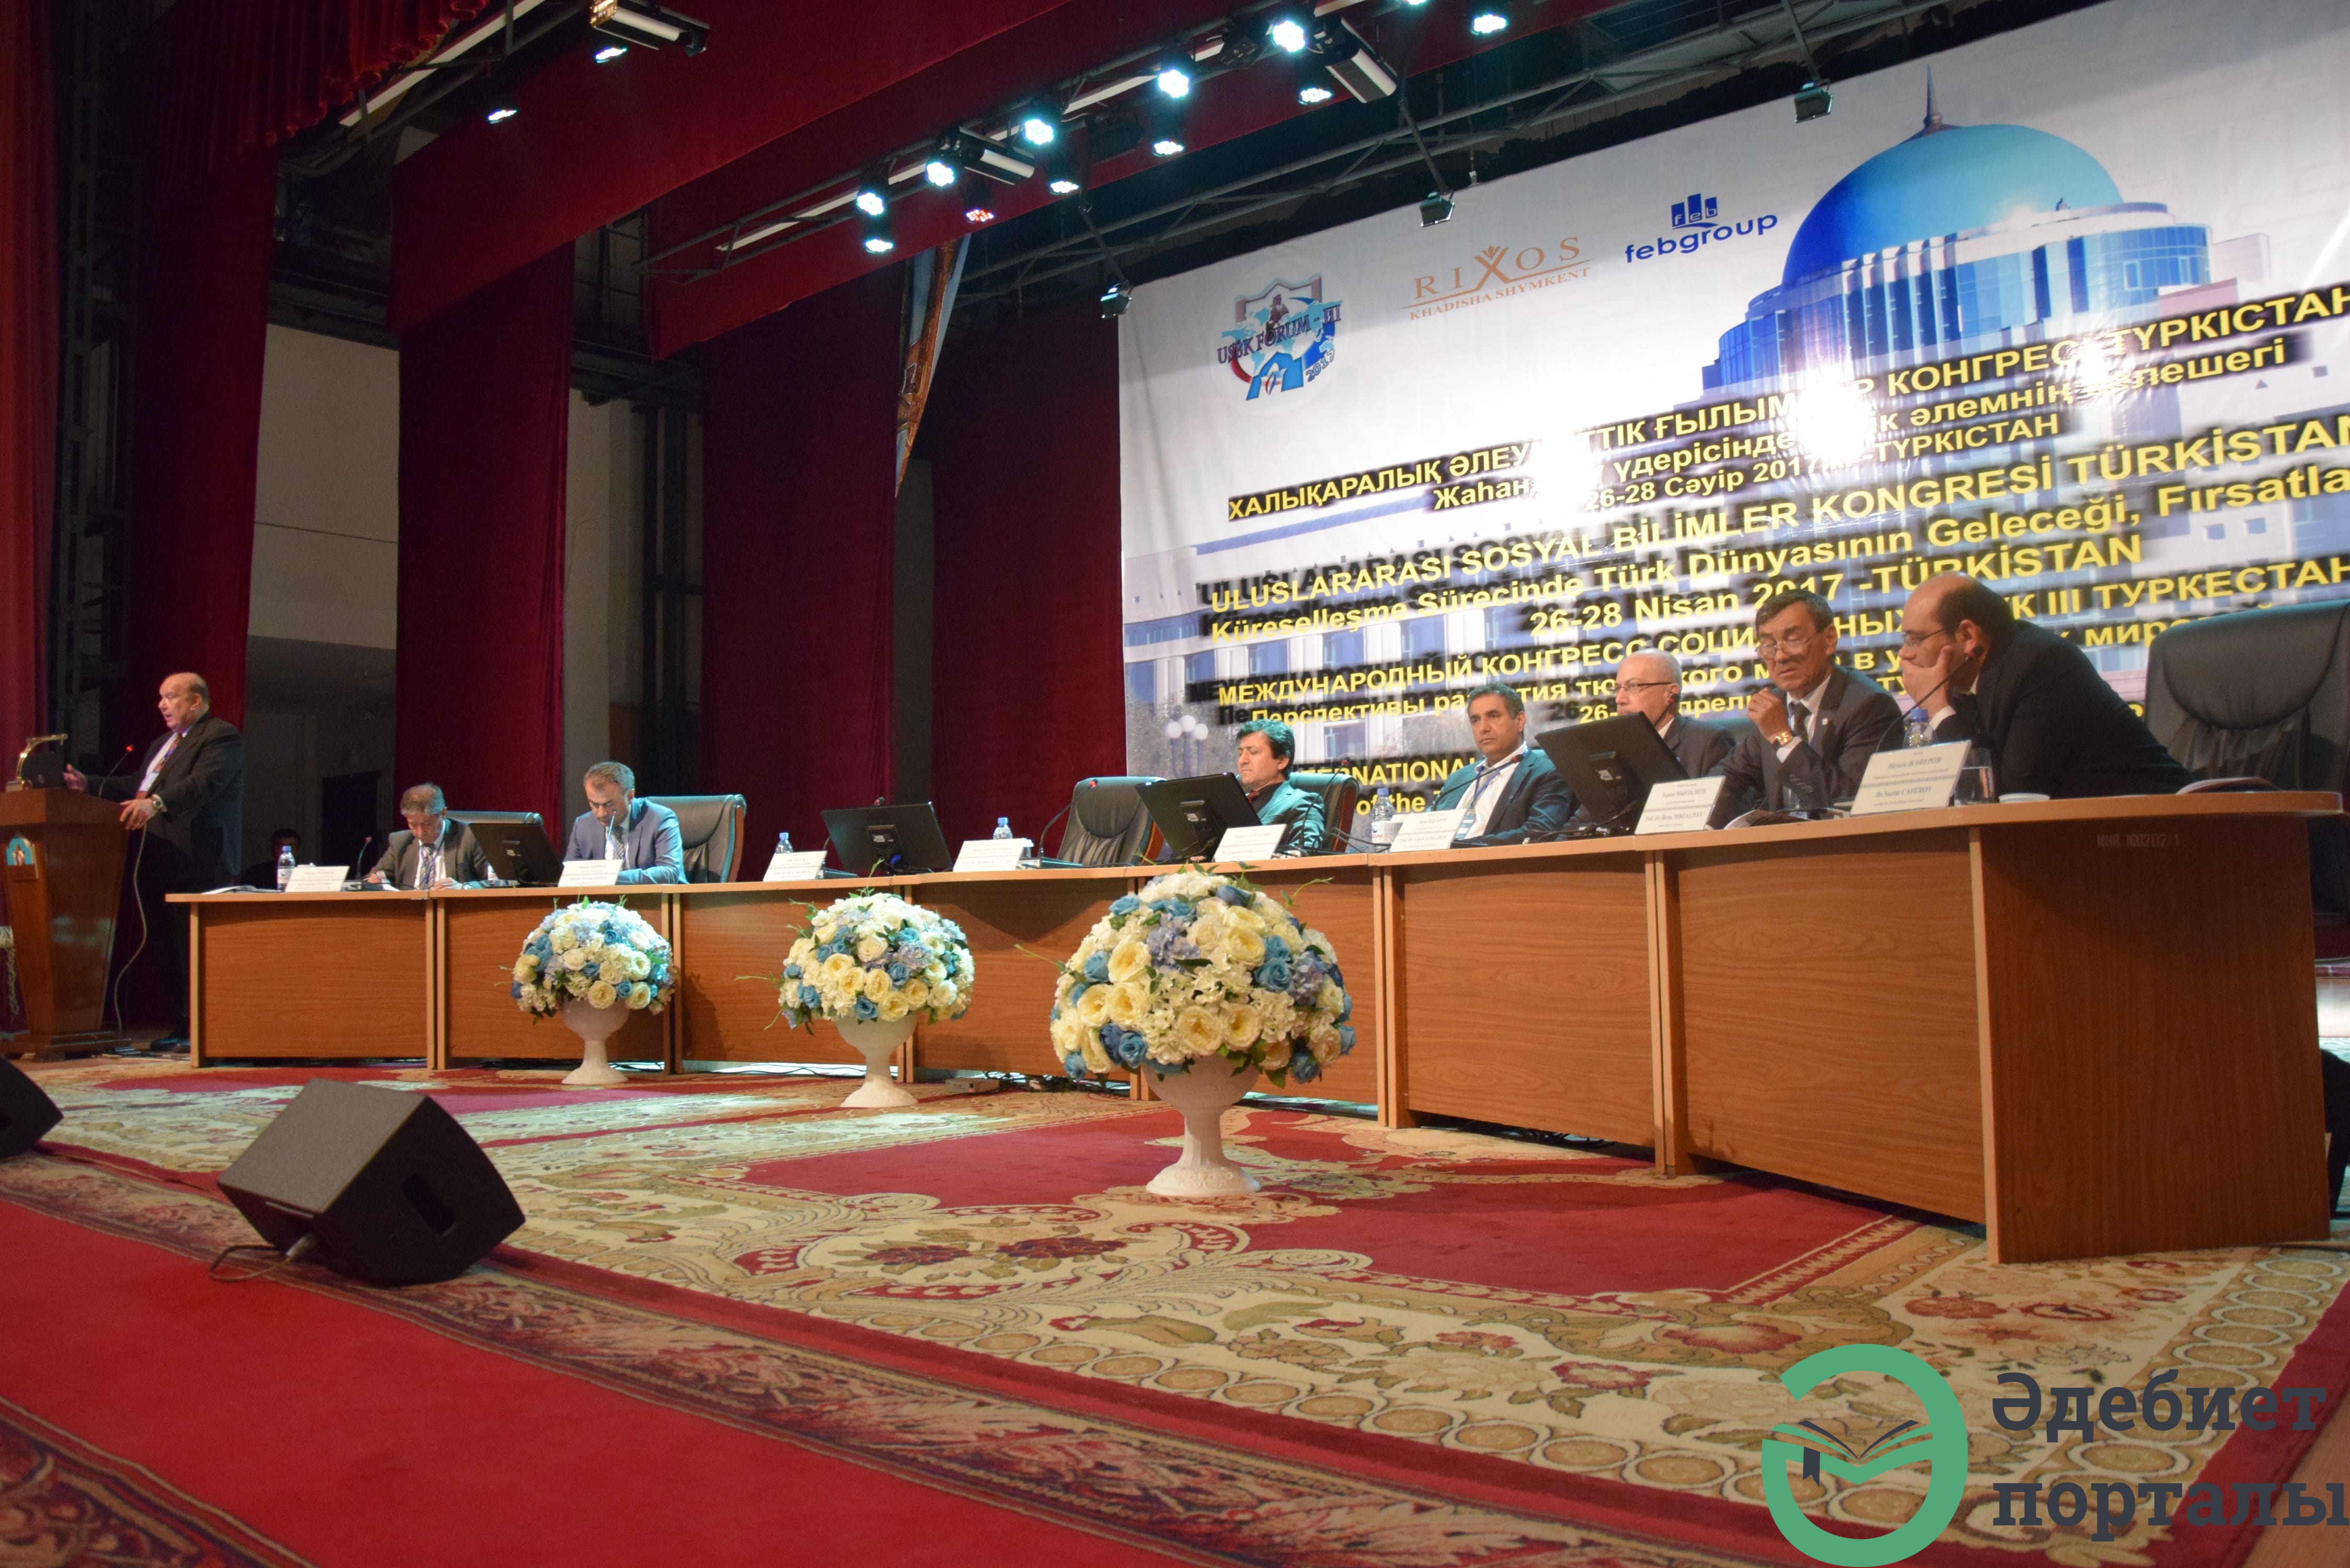 Халықаралық әлеуметтік ғылымдар конгресі: ІІІ Түркістан форумы  - фото 67 - adebiportal.kz